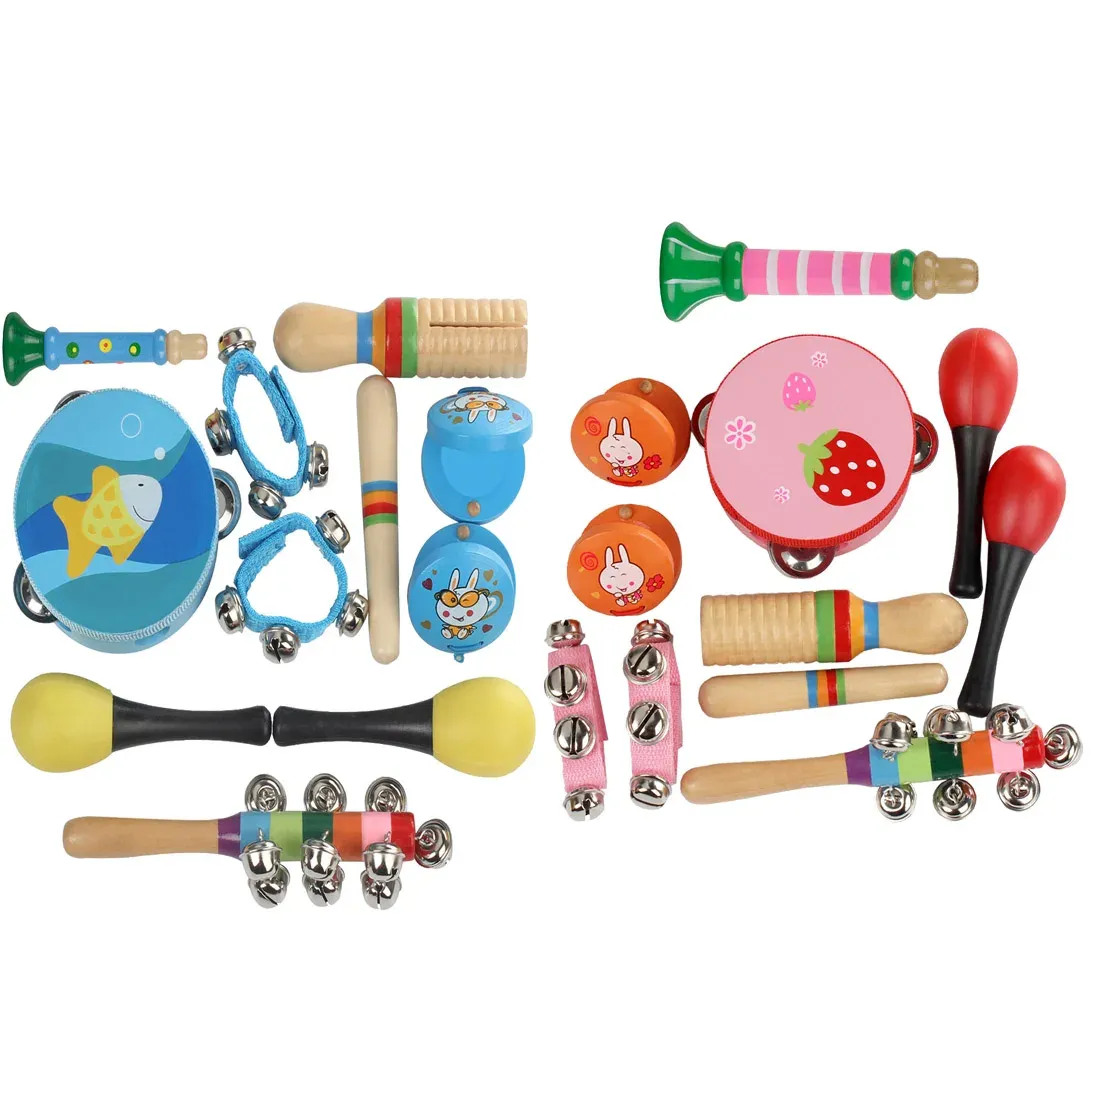 Bloki 10 szt. Orff Muzyczne instrumenty dla dzieci Zestaw muzyki dziecięcej Early Education Toys for Boys and Girls Preschool Education Tambourine